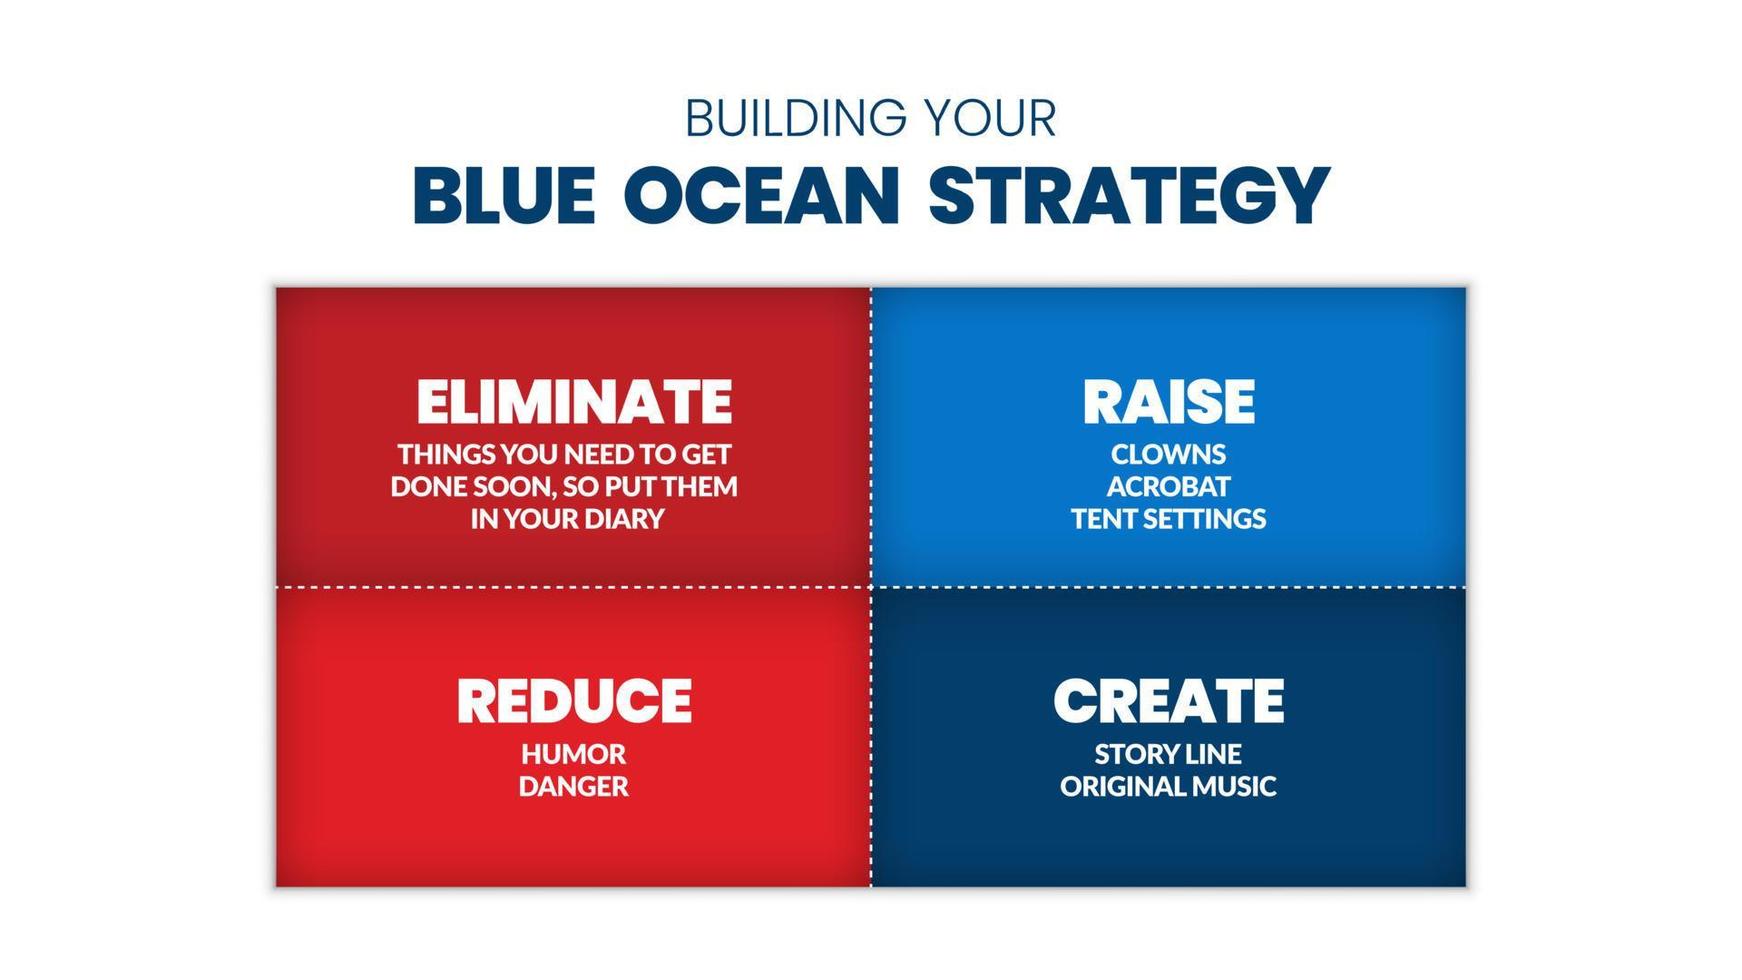 en blå ocean strategi matris presentation är en vektor infographic marknadsföring i rött och den blå fyrkanten bestod av elimineras, höja, minska och skapa. en mass- och nischmarknad är affärsplan